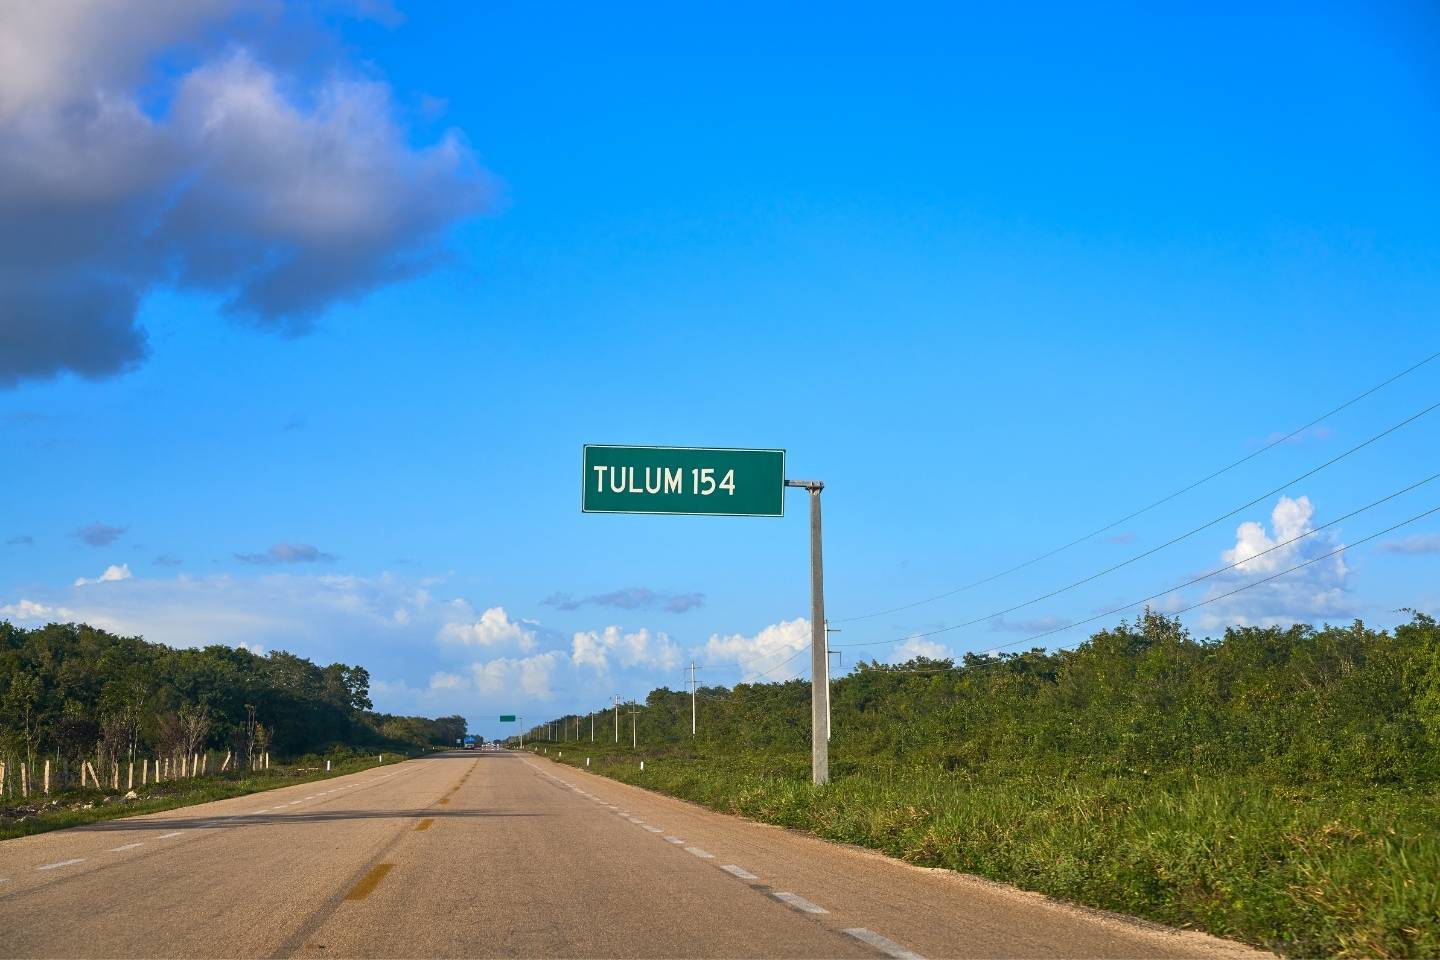 Road in Tulum Mexico